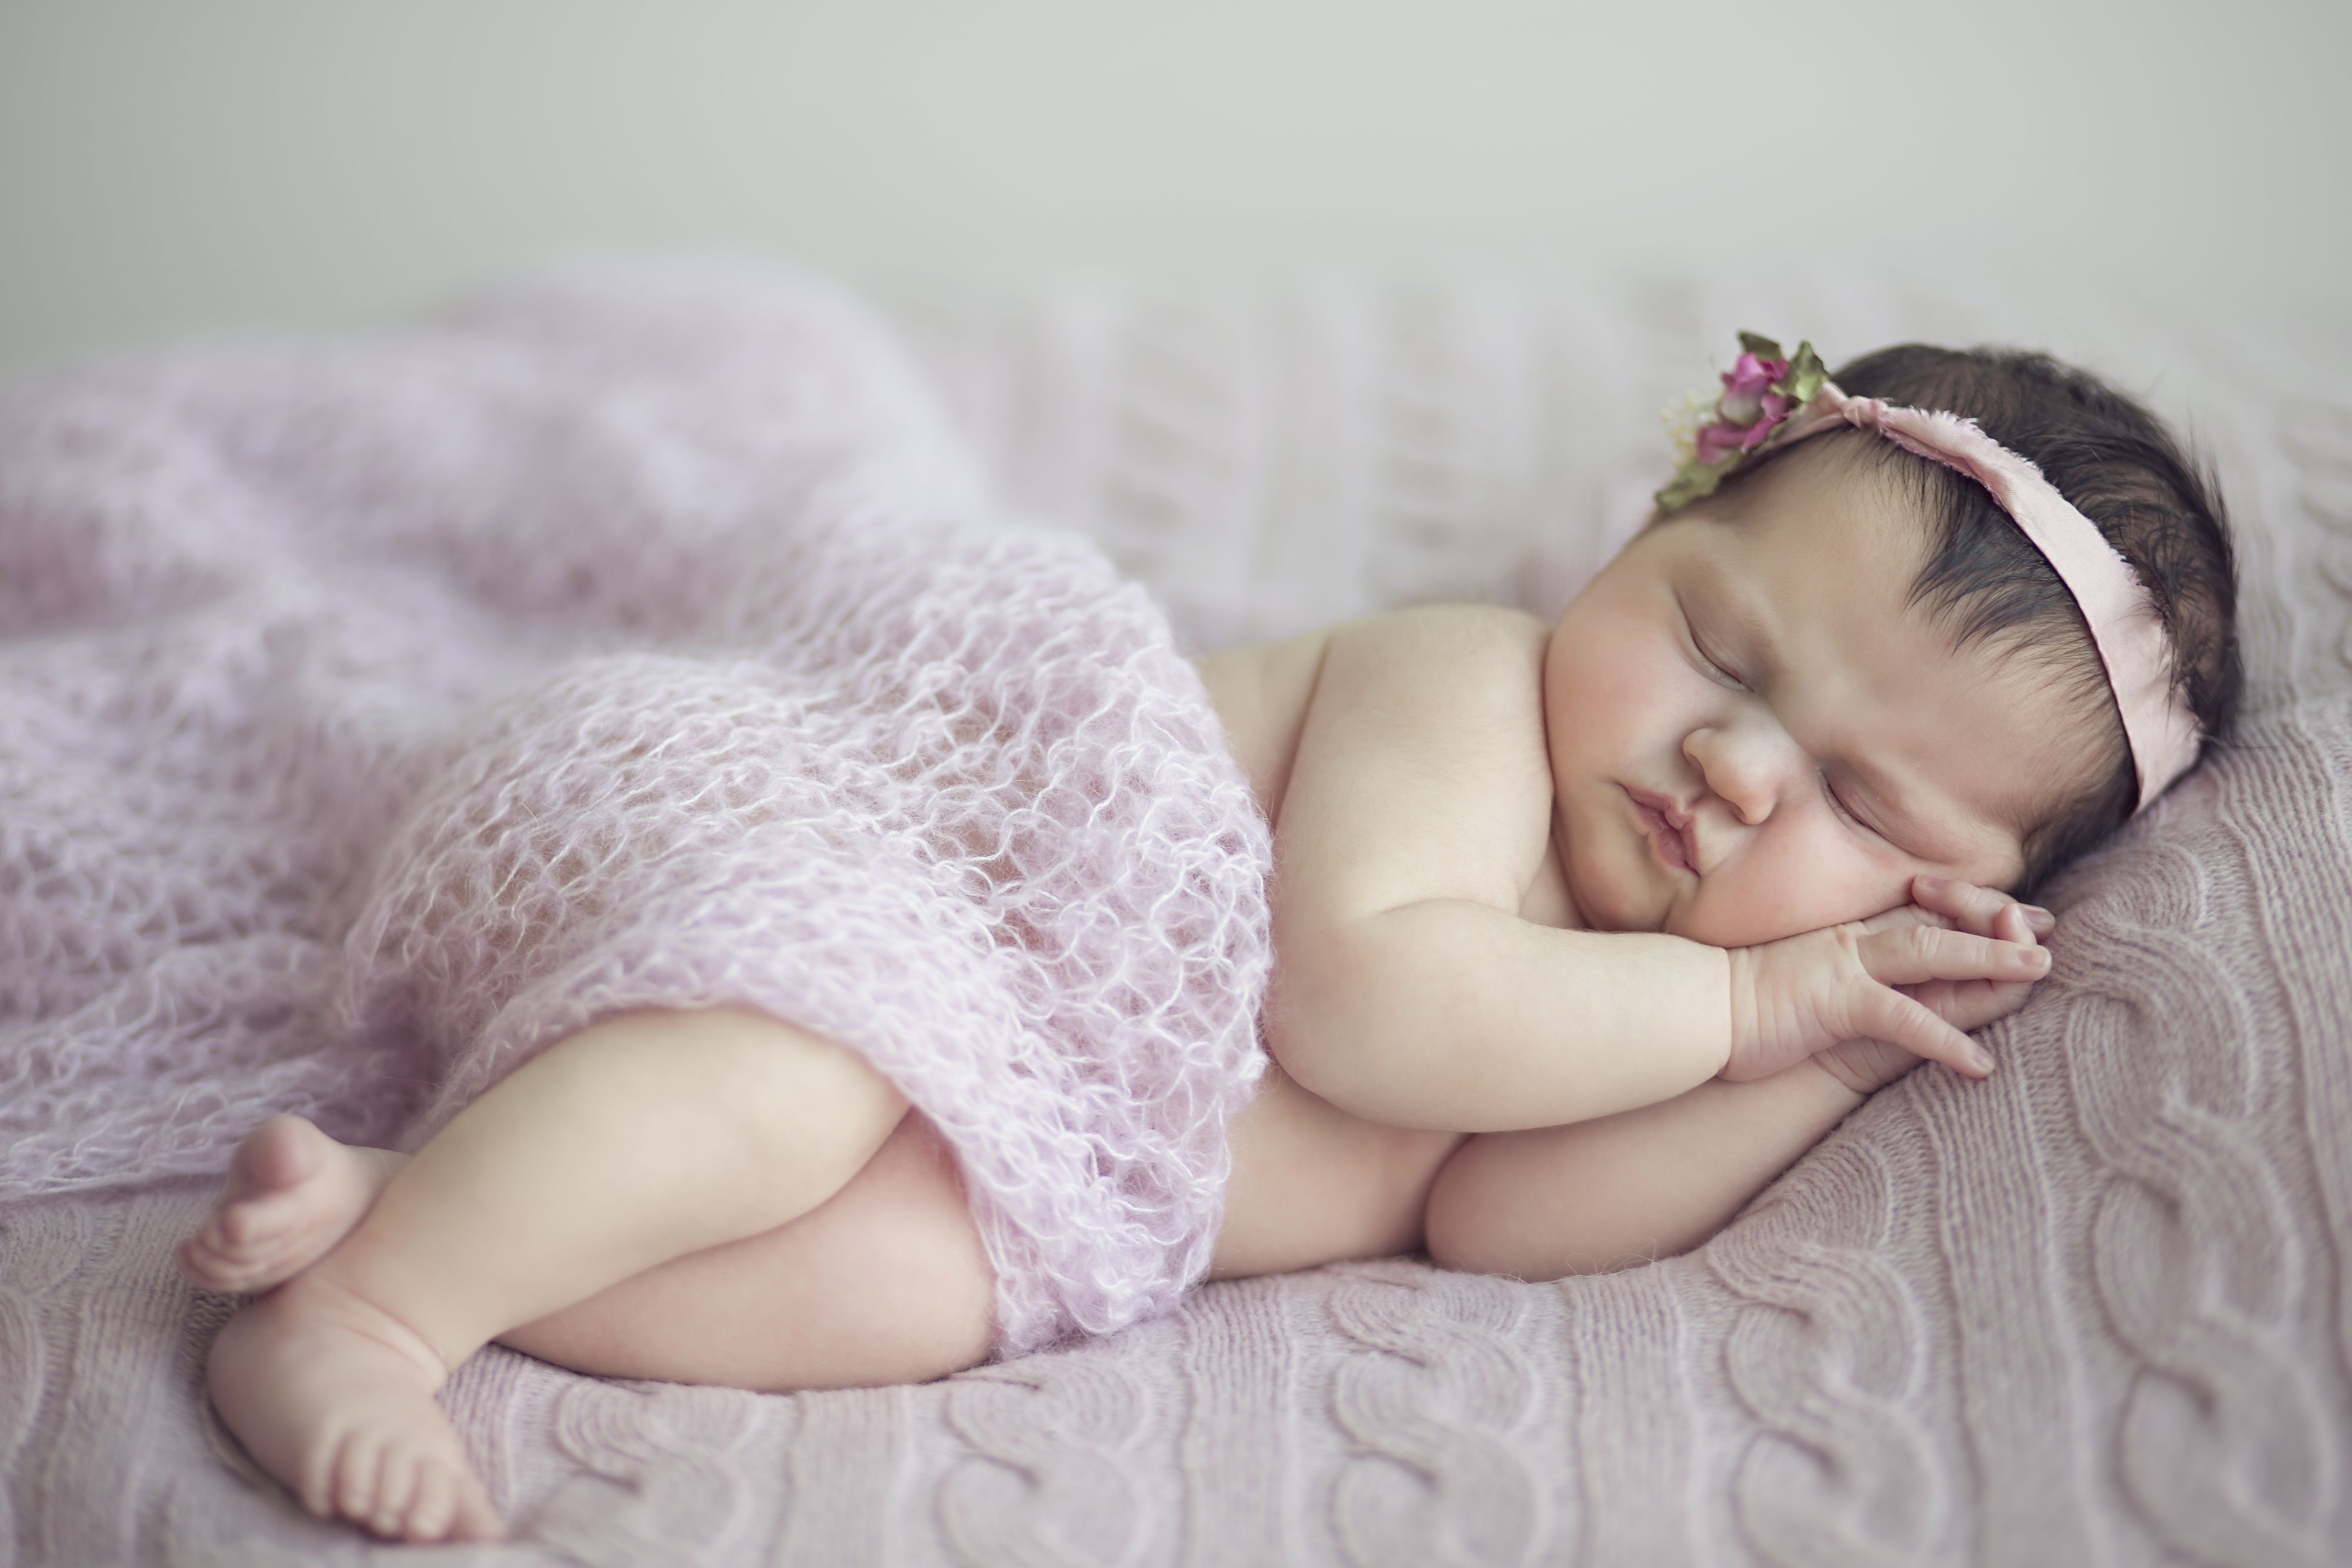 K, #Sleeping, #Cute baby, #Baby girl. Mocah.org HD Wallpaper